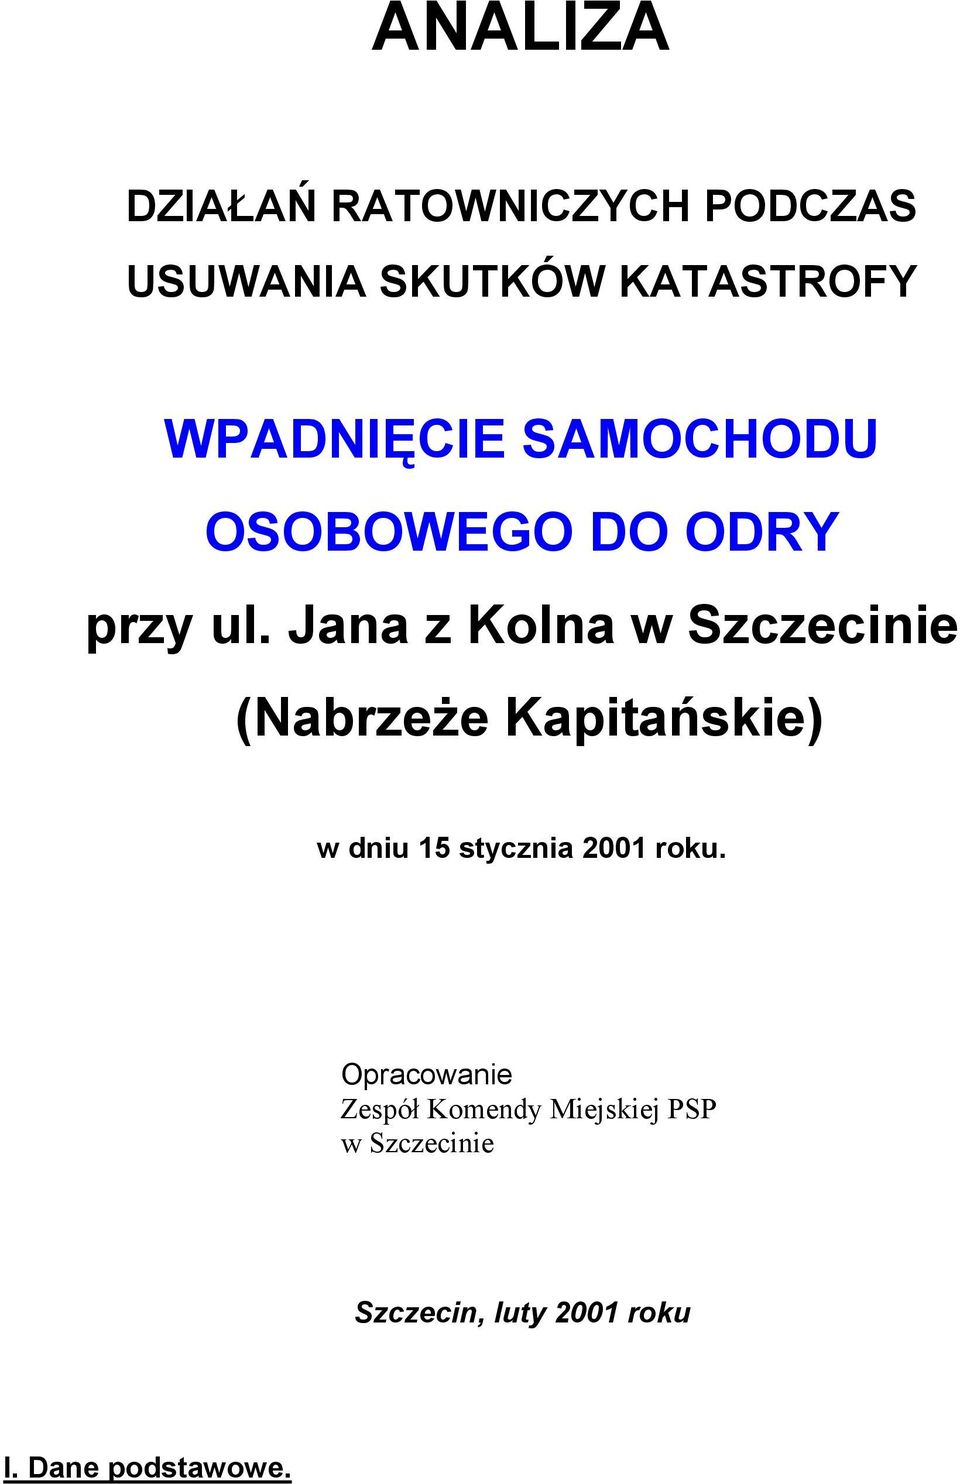 Jana z Kolna w Szczecinie (Nabrzeże Kapitańskie) w dniu 15 stycznia 2001